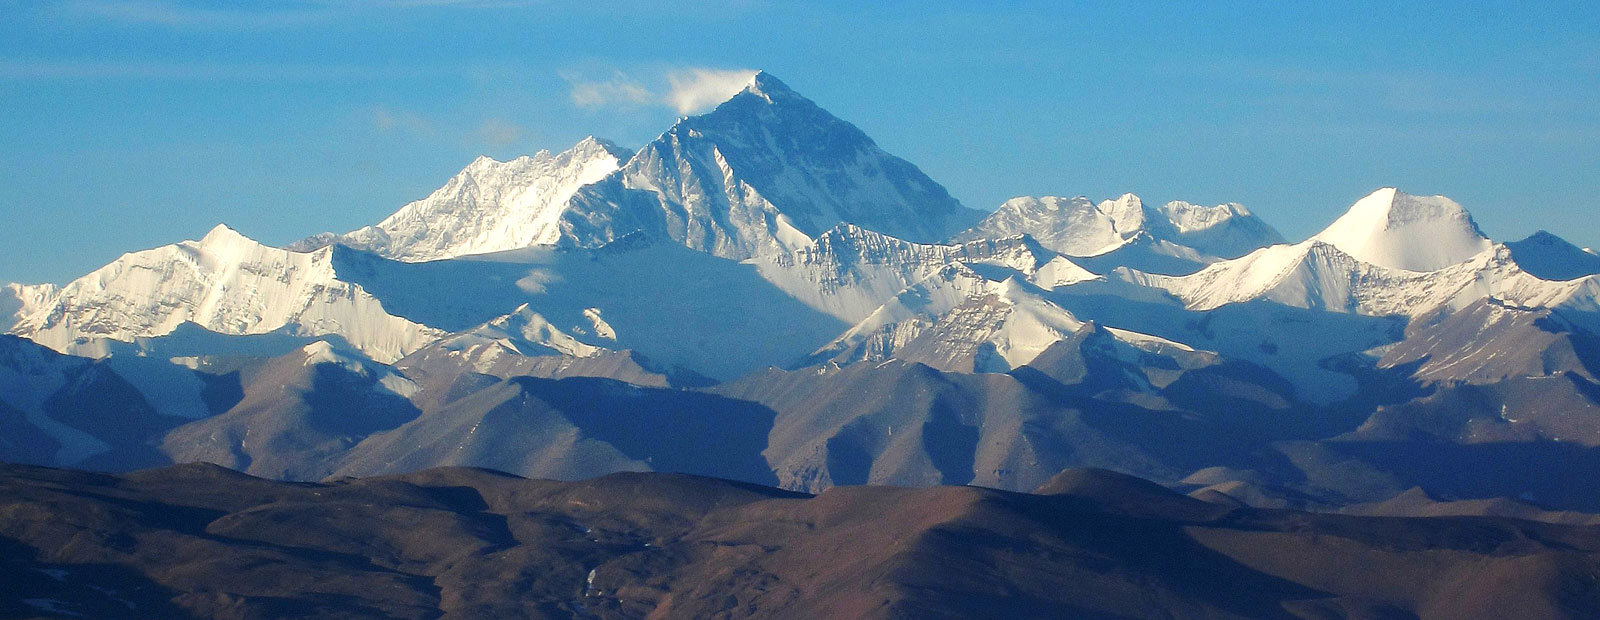 Mount Everest i Himalaya med blå himmel